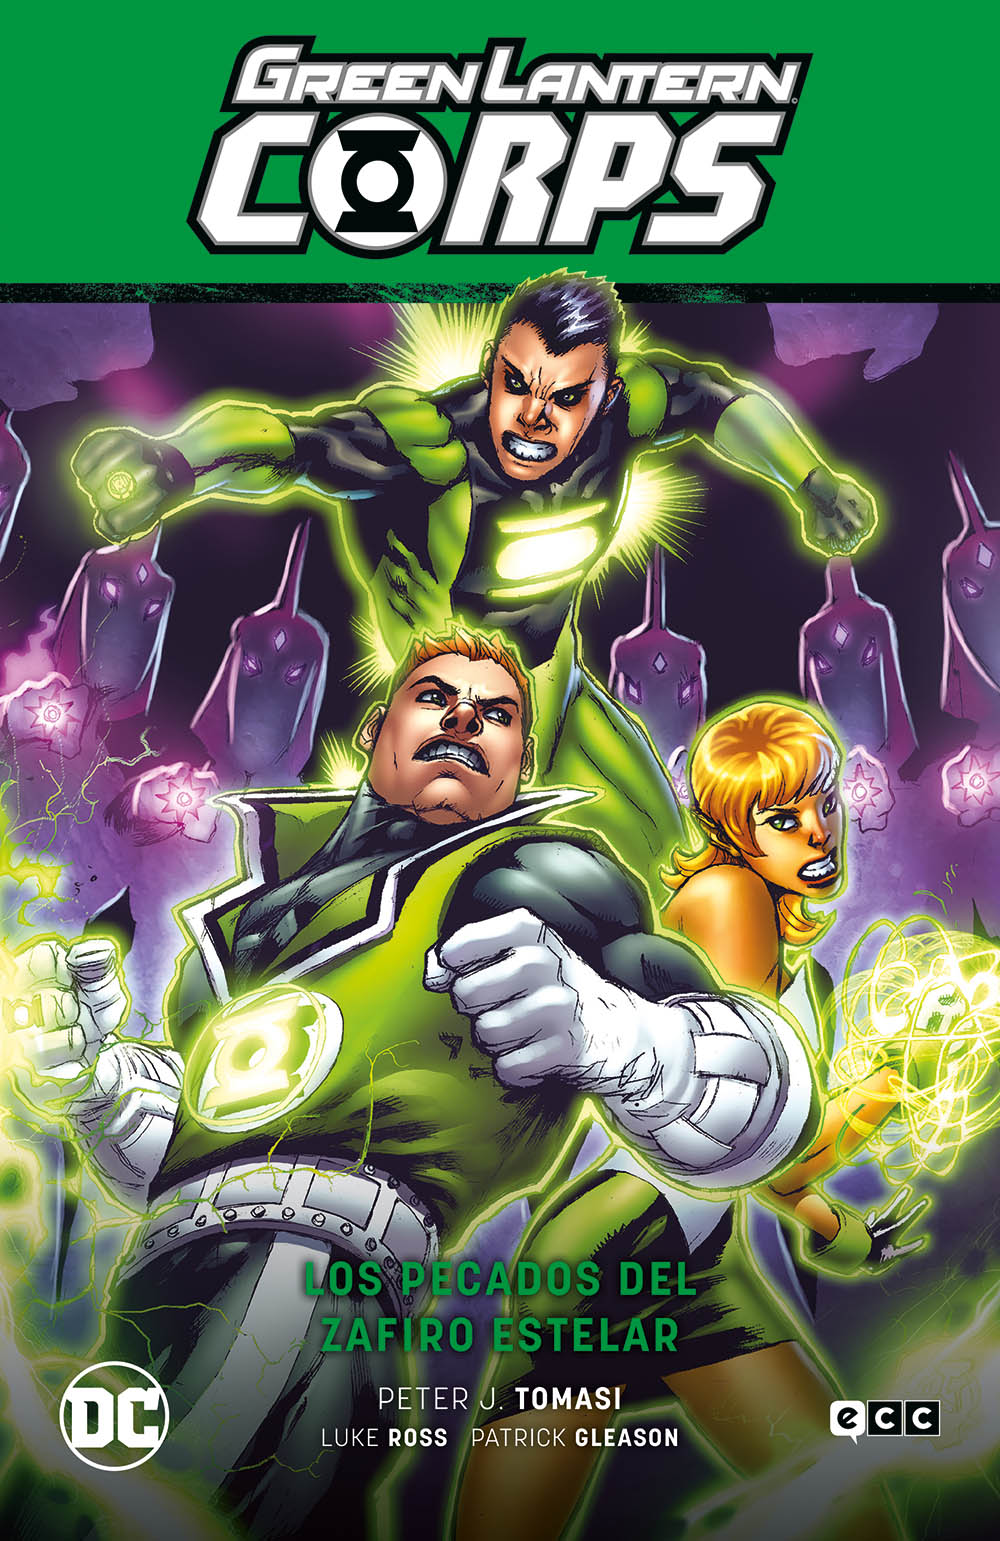 SEGUNDA MANO Green Lantern Corps Vol. 5: Los pecados del Zafiro estelar (Flash Saga - La noche más oscura Parte 4)- COPIAR